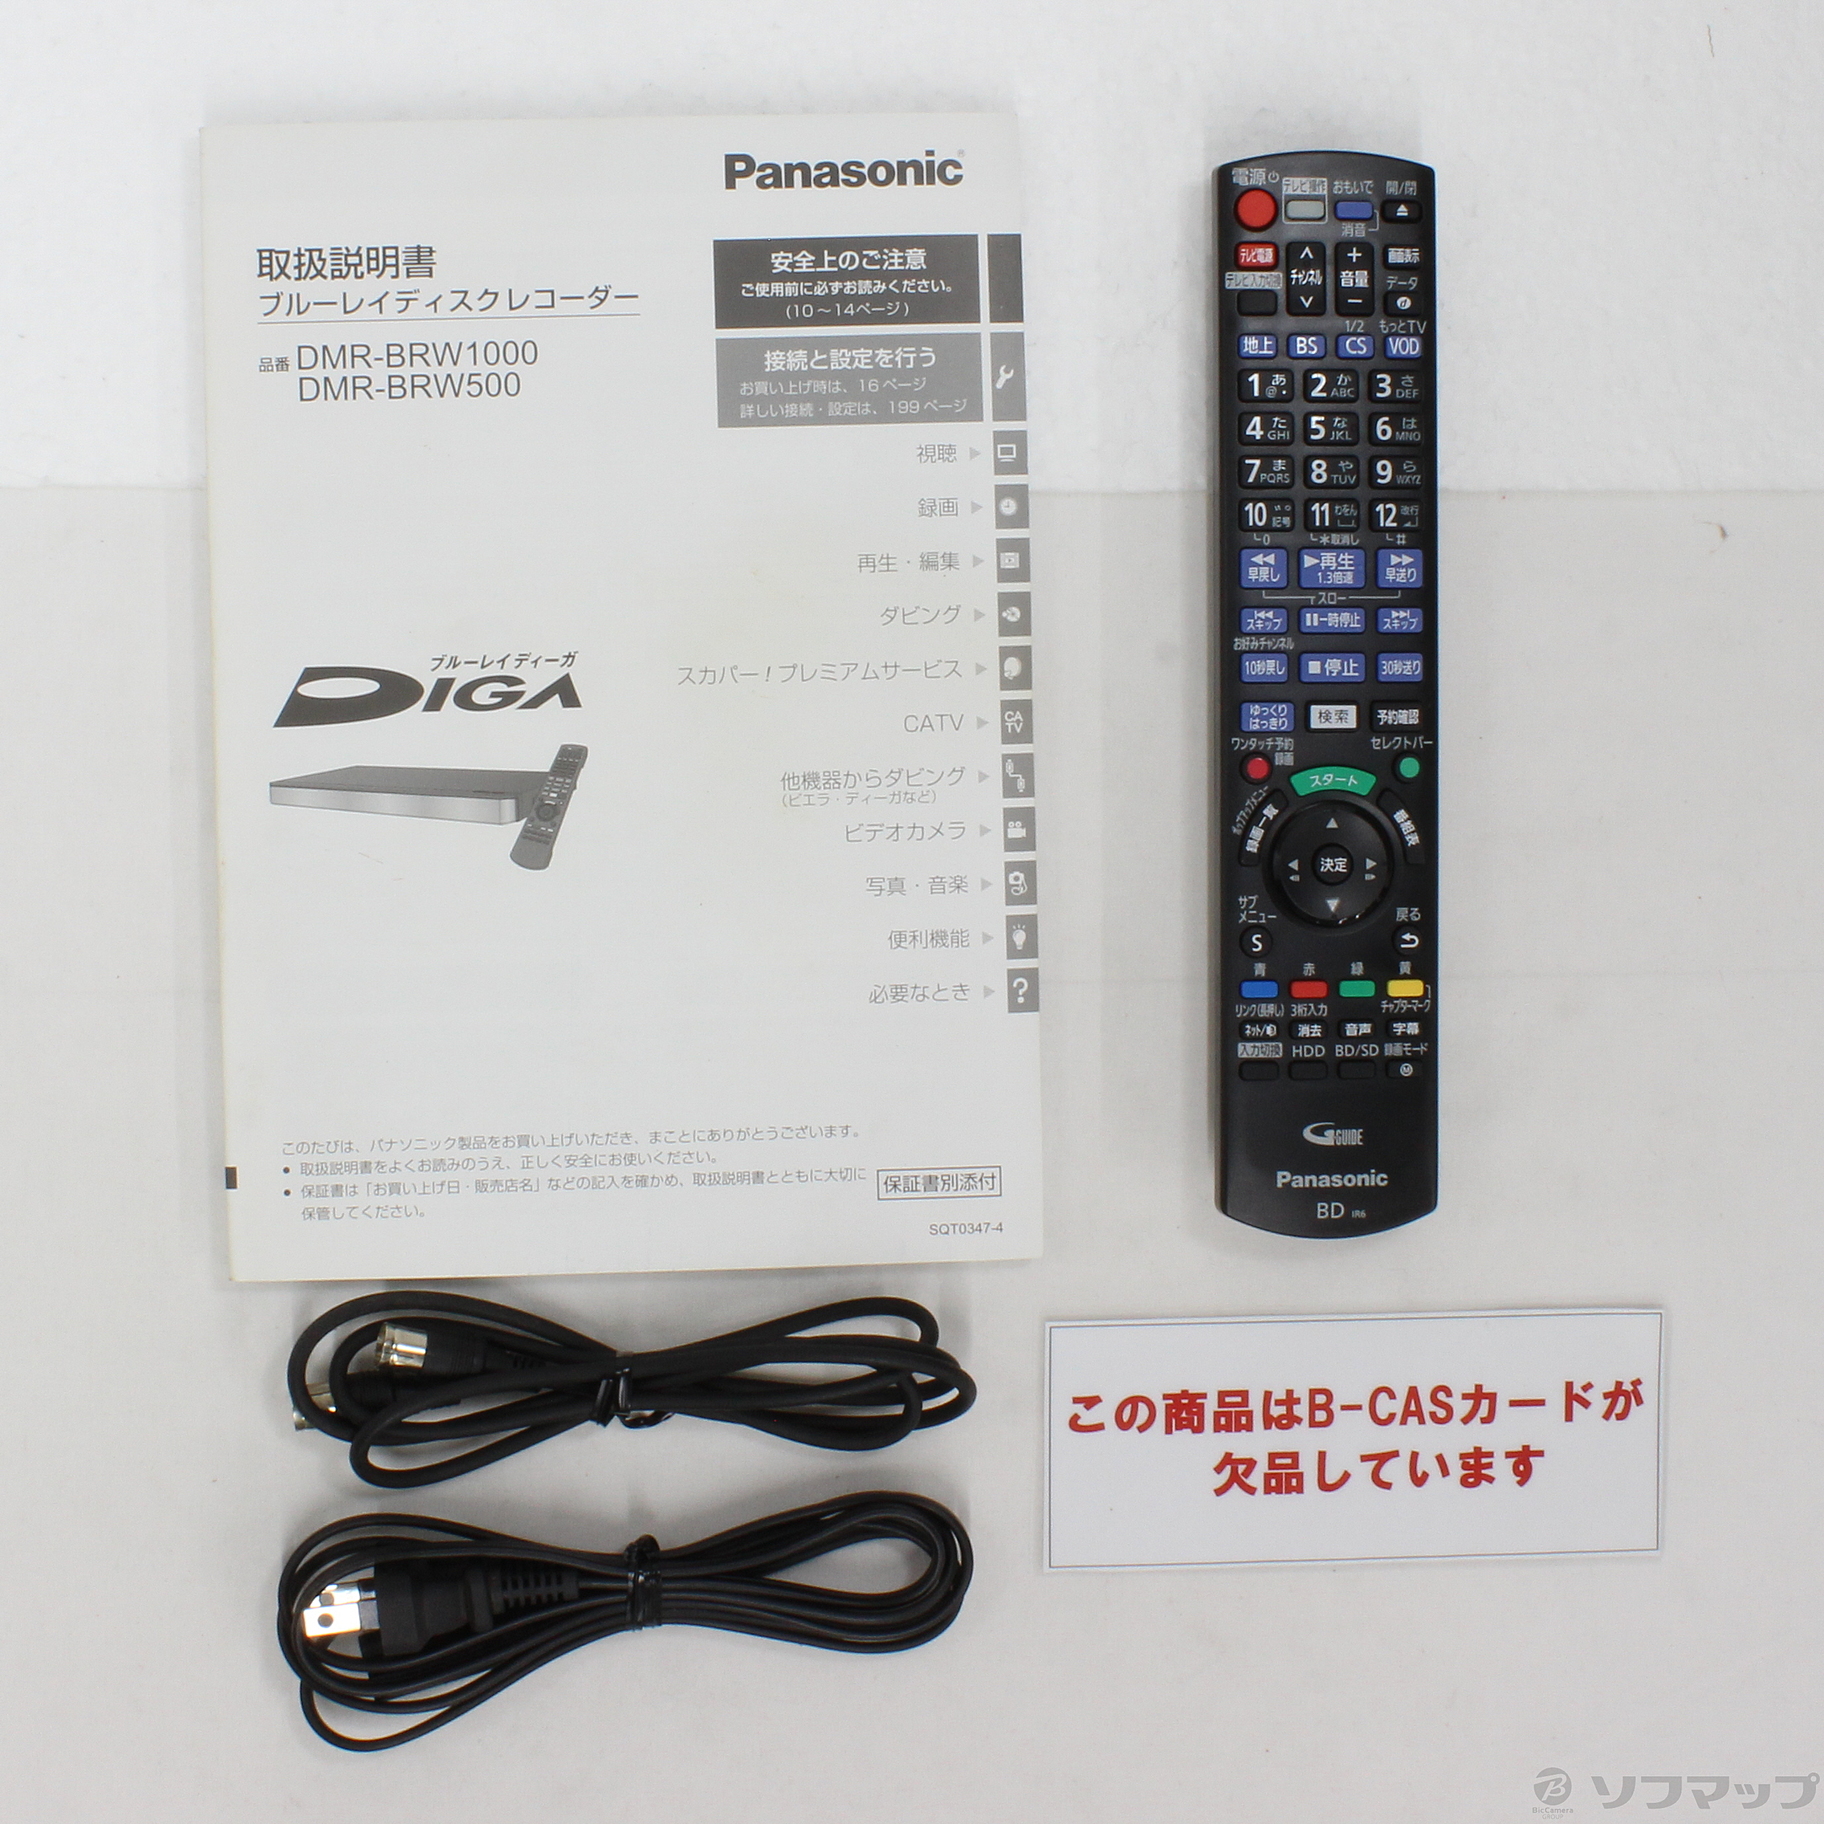 セール価格で販売 新品HDD1TBへ交換！！Panasonic ディーガ DMR